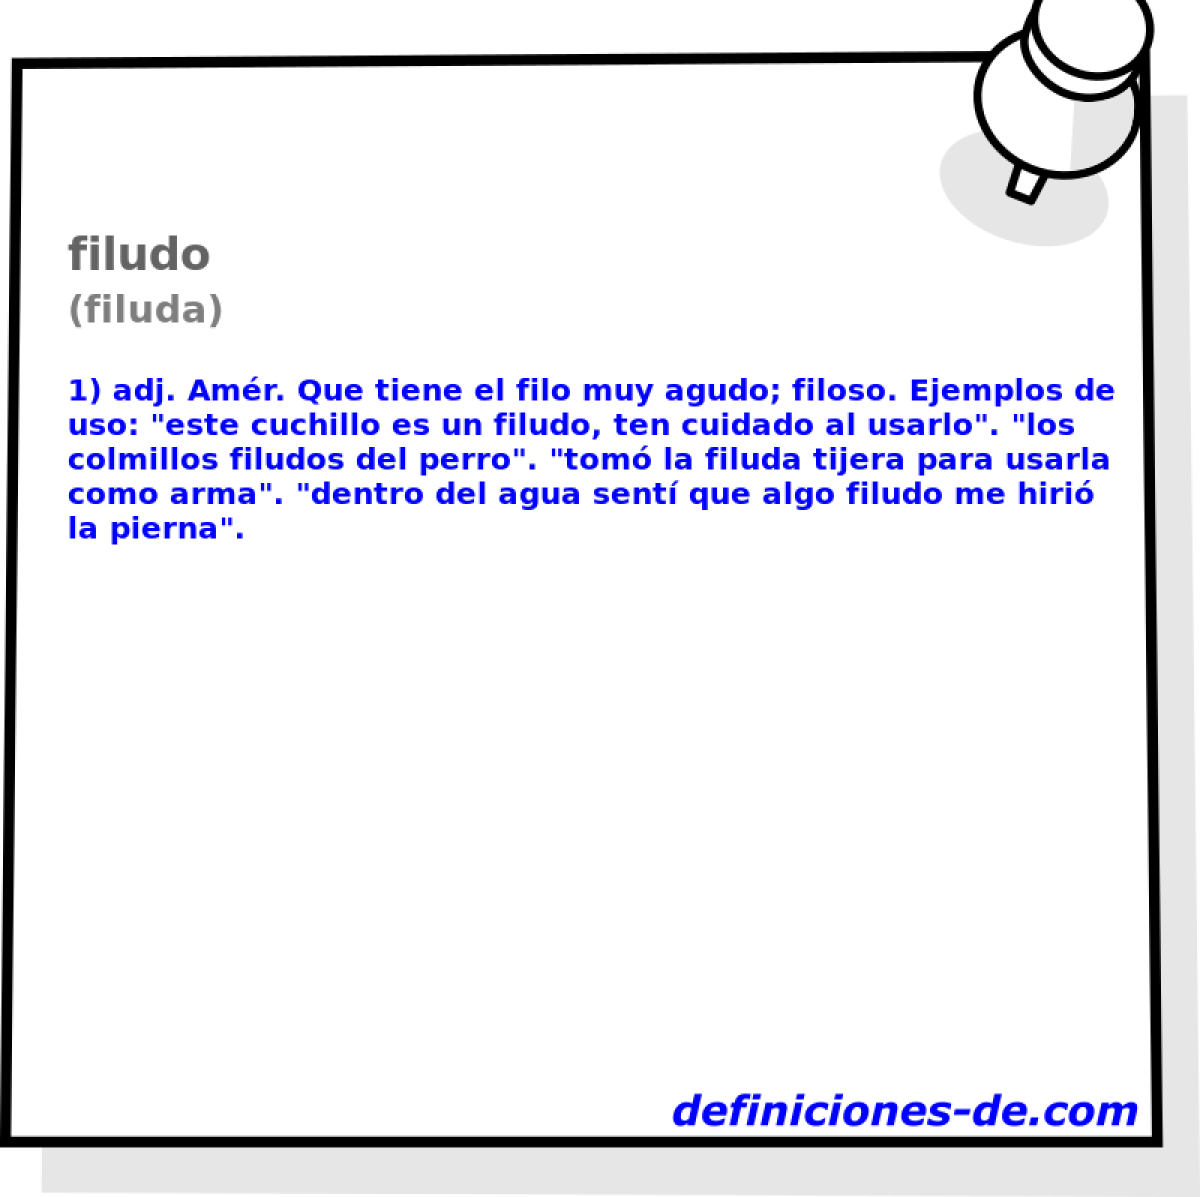 filudo (filuda)